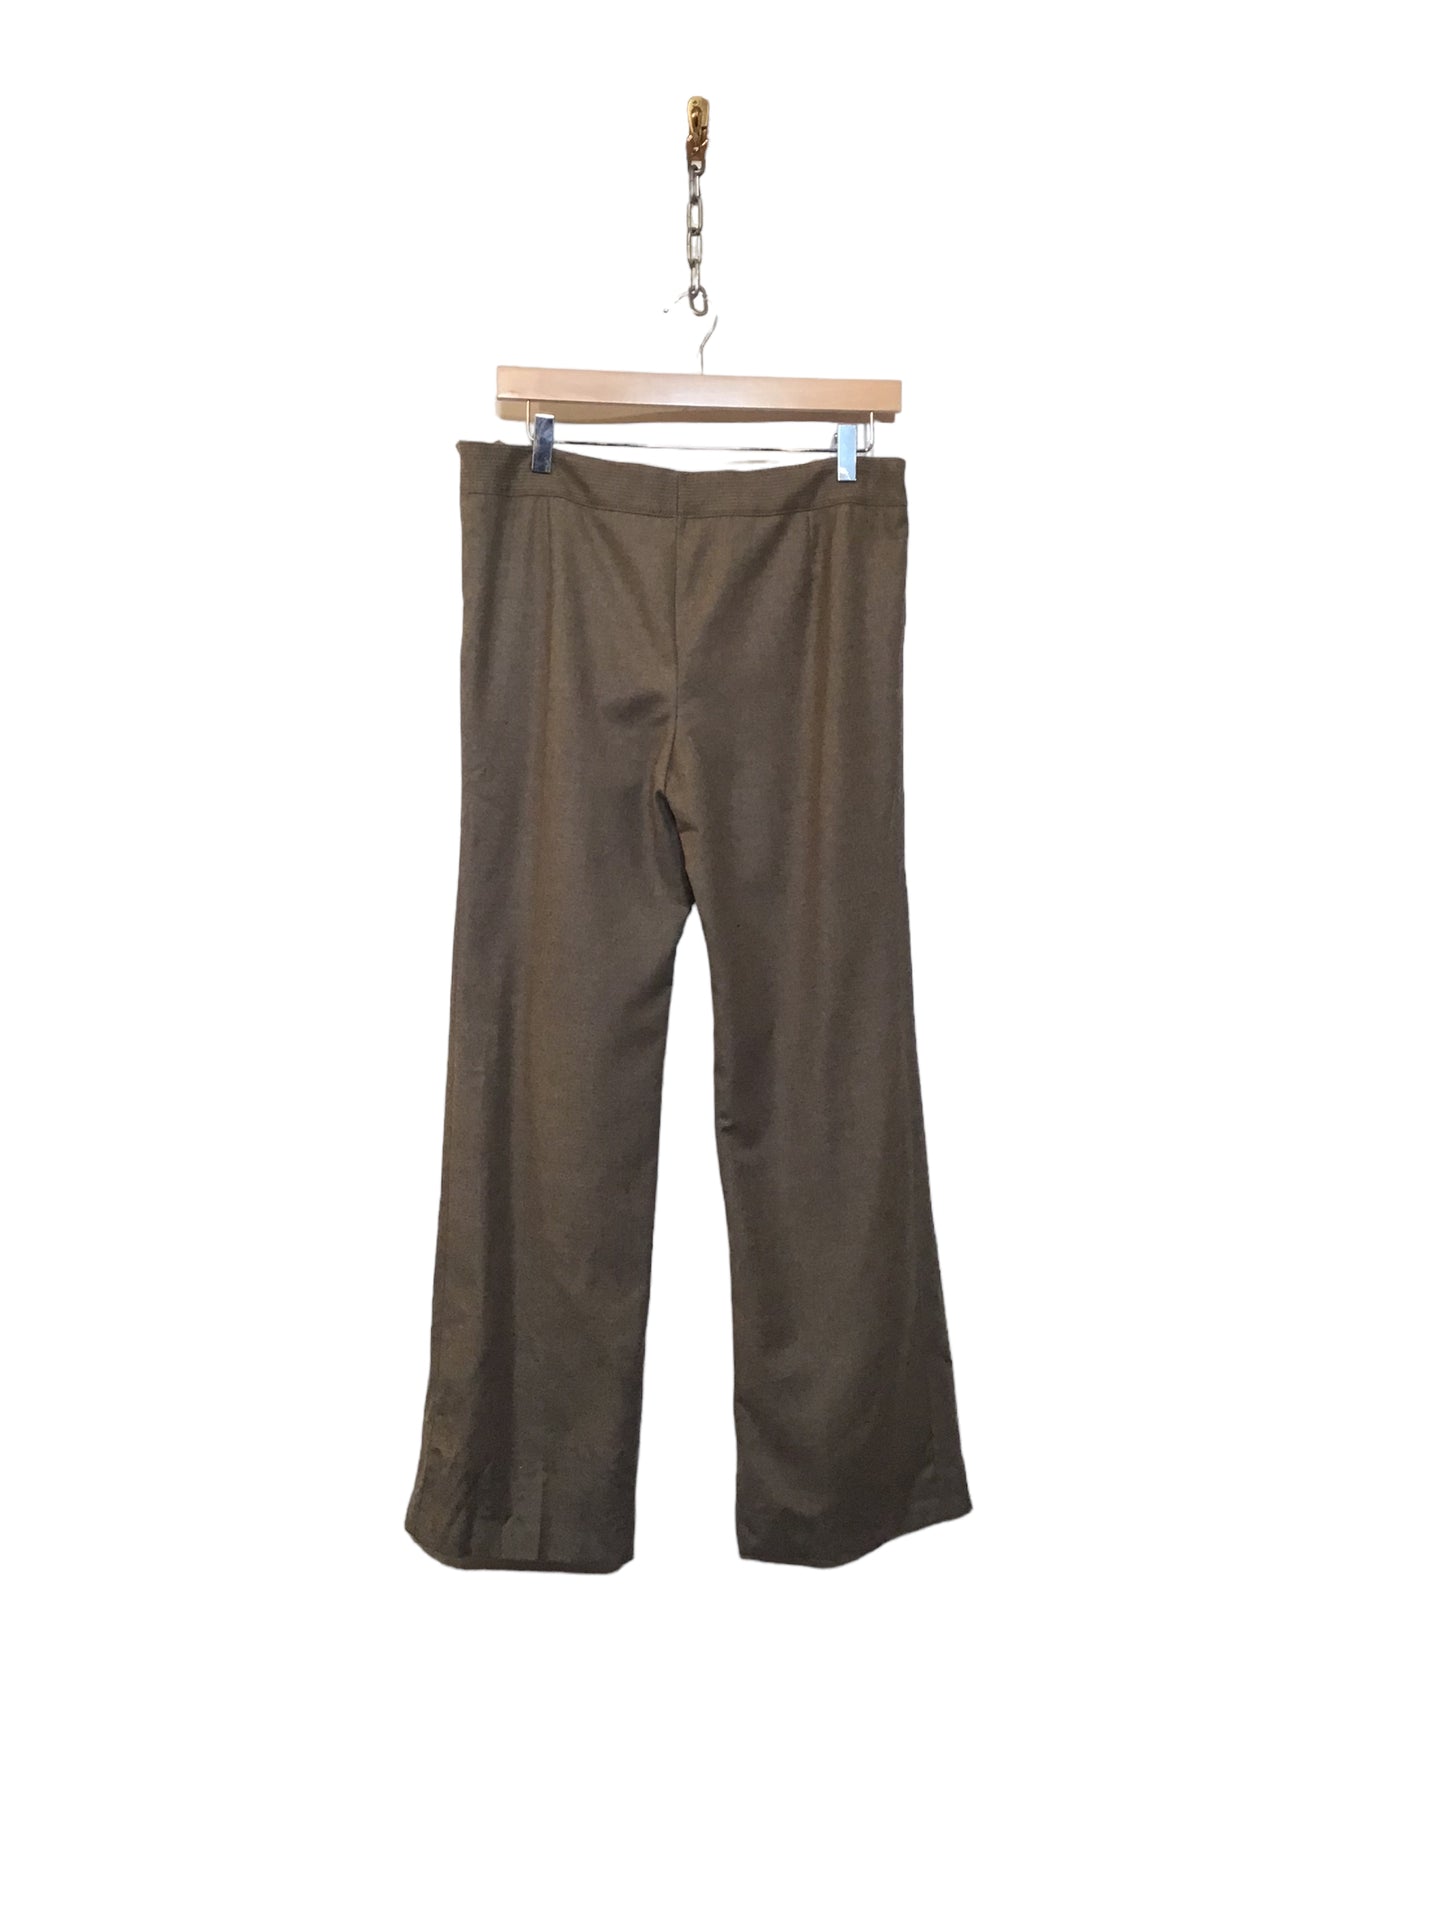 Brown Woollen Trousers (Size XL)